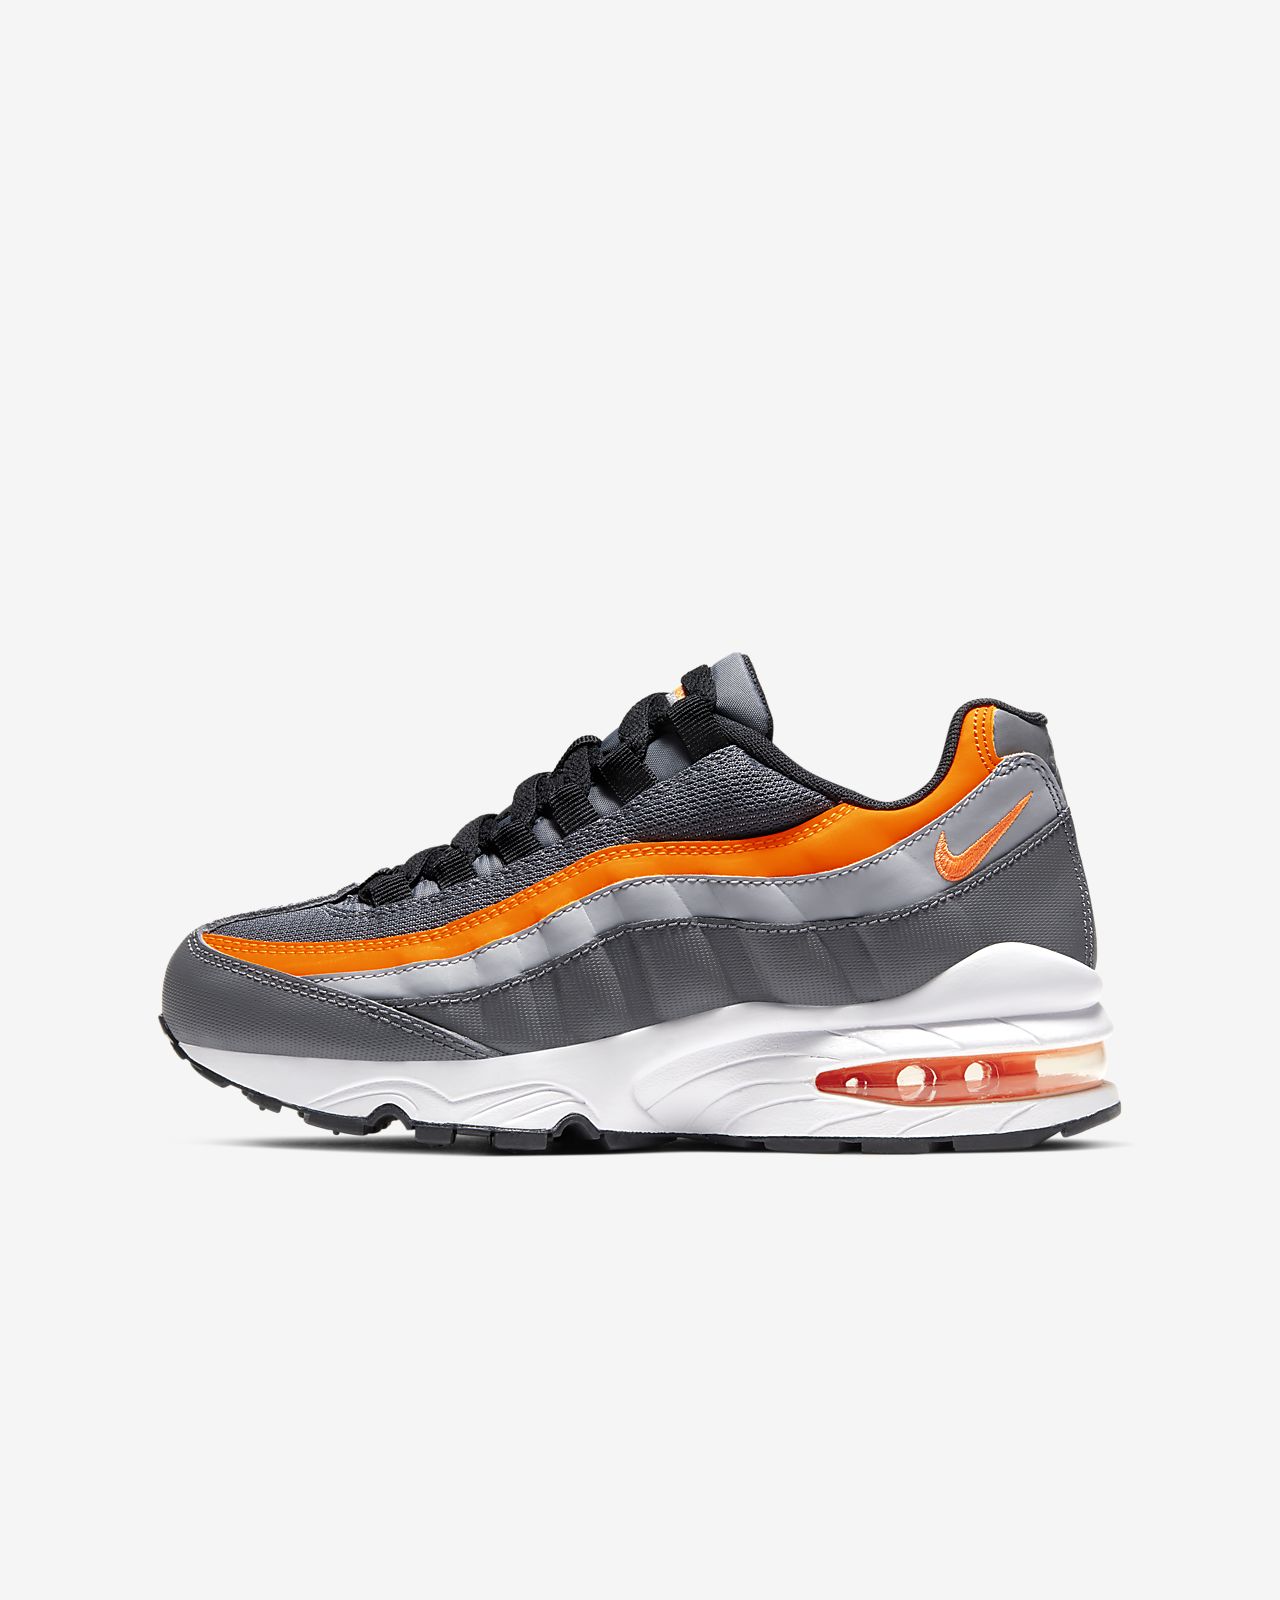 grey and orange 95s